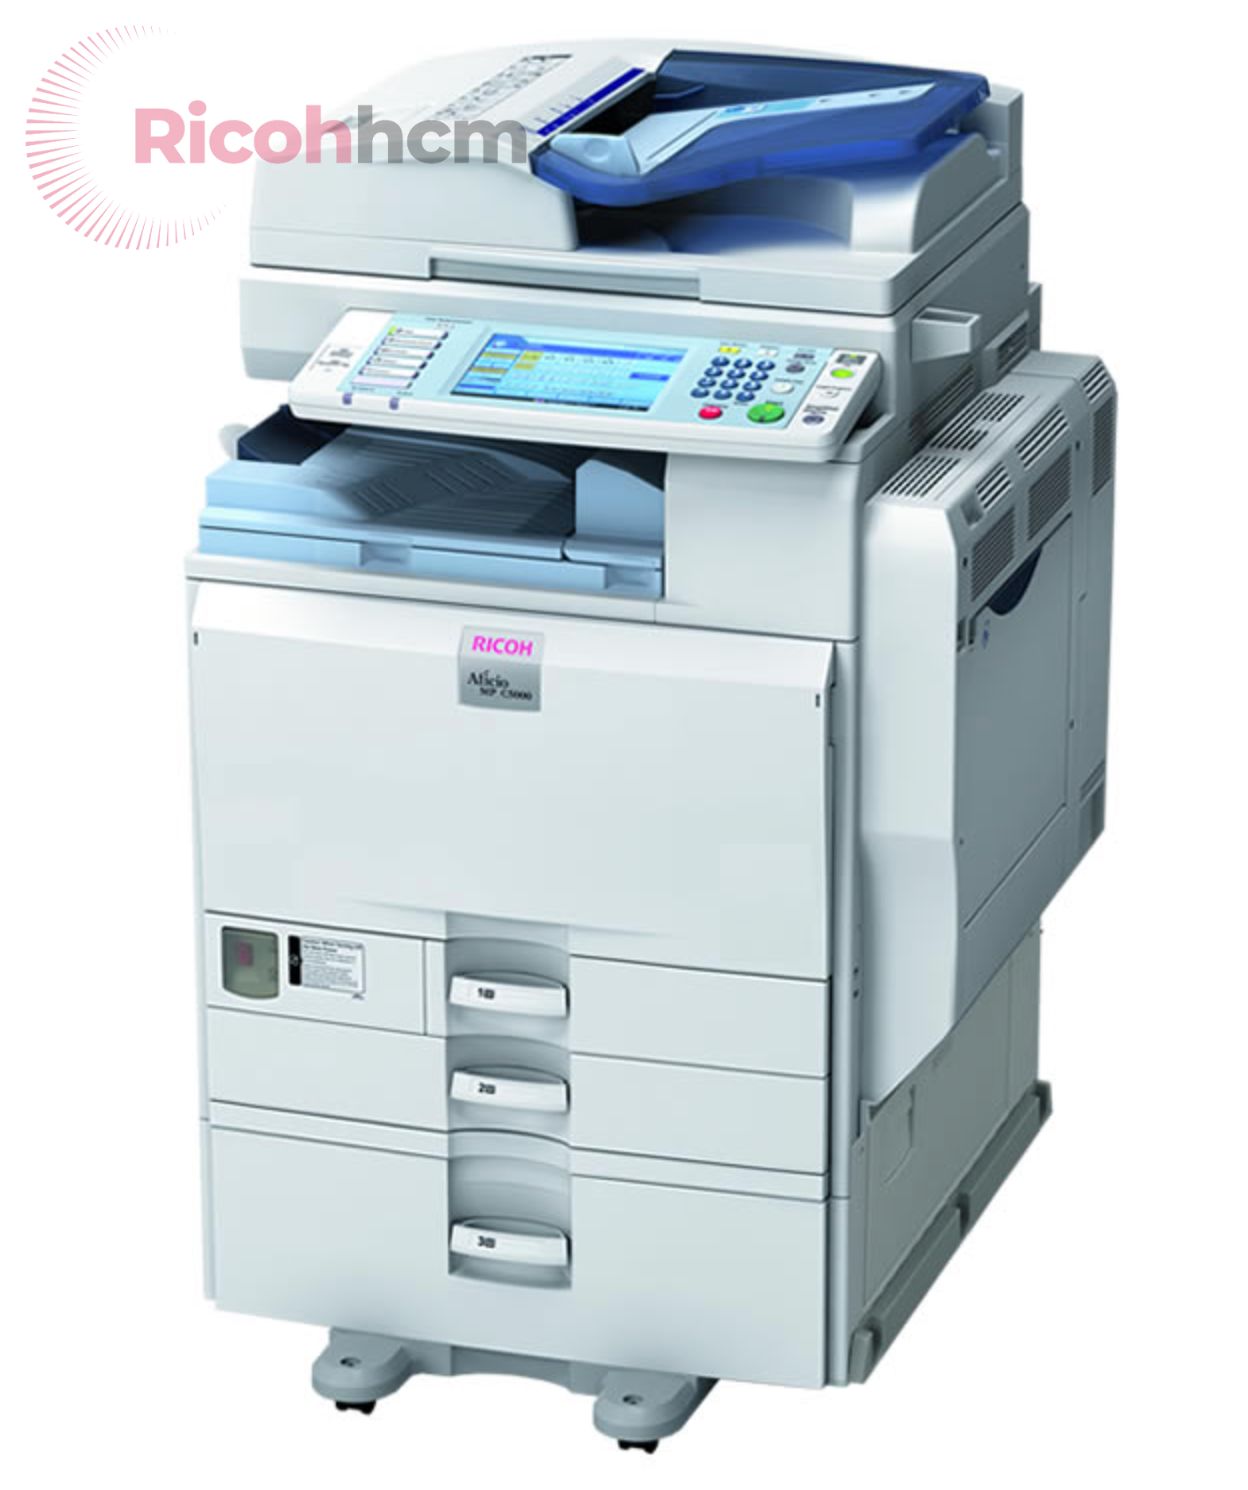 Ricoh Aficio MP 4000 là một sự lựa chọn thông minh cho phân khúc máy photocopy giá rẻ dưới 10 triệu